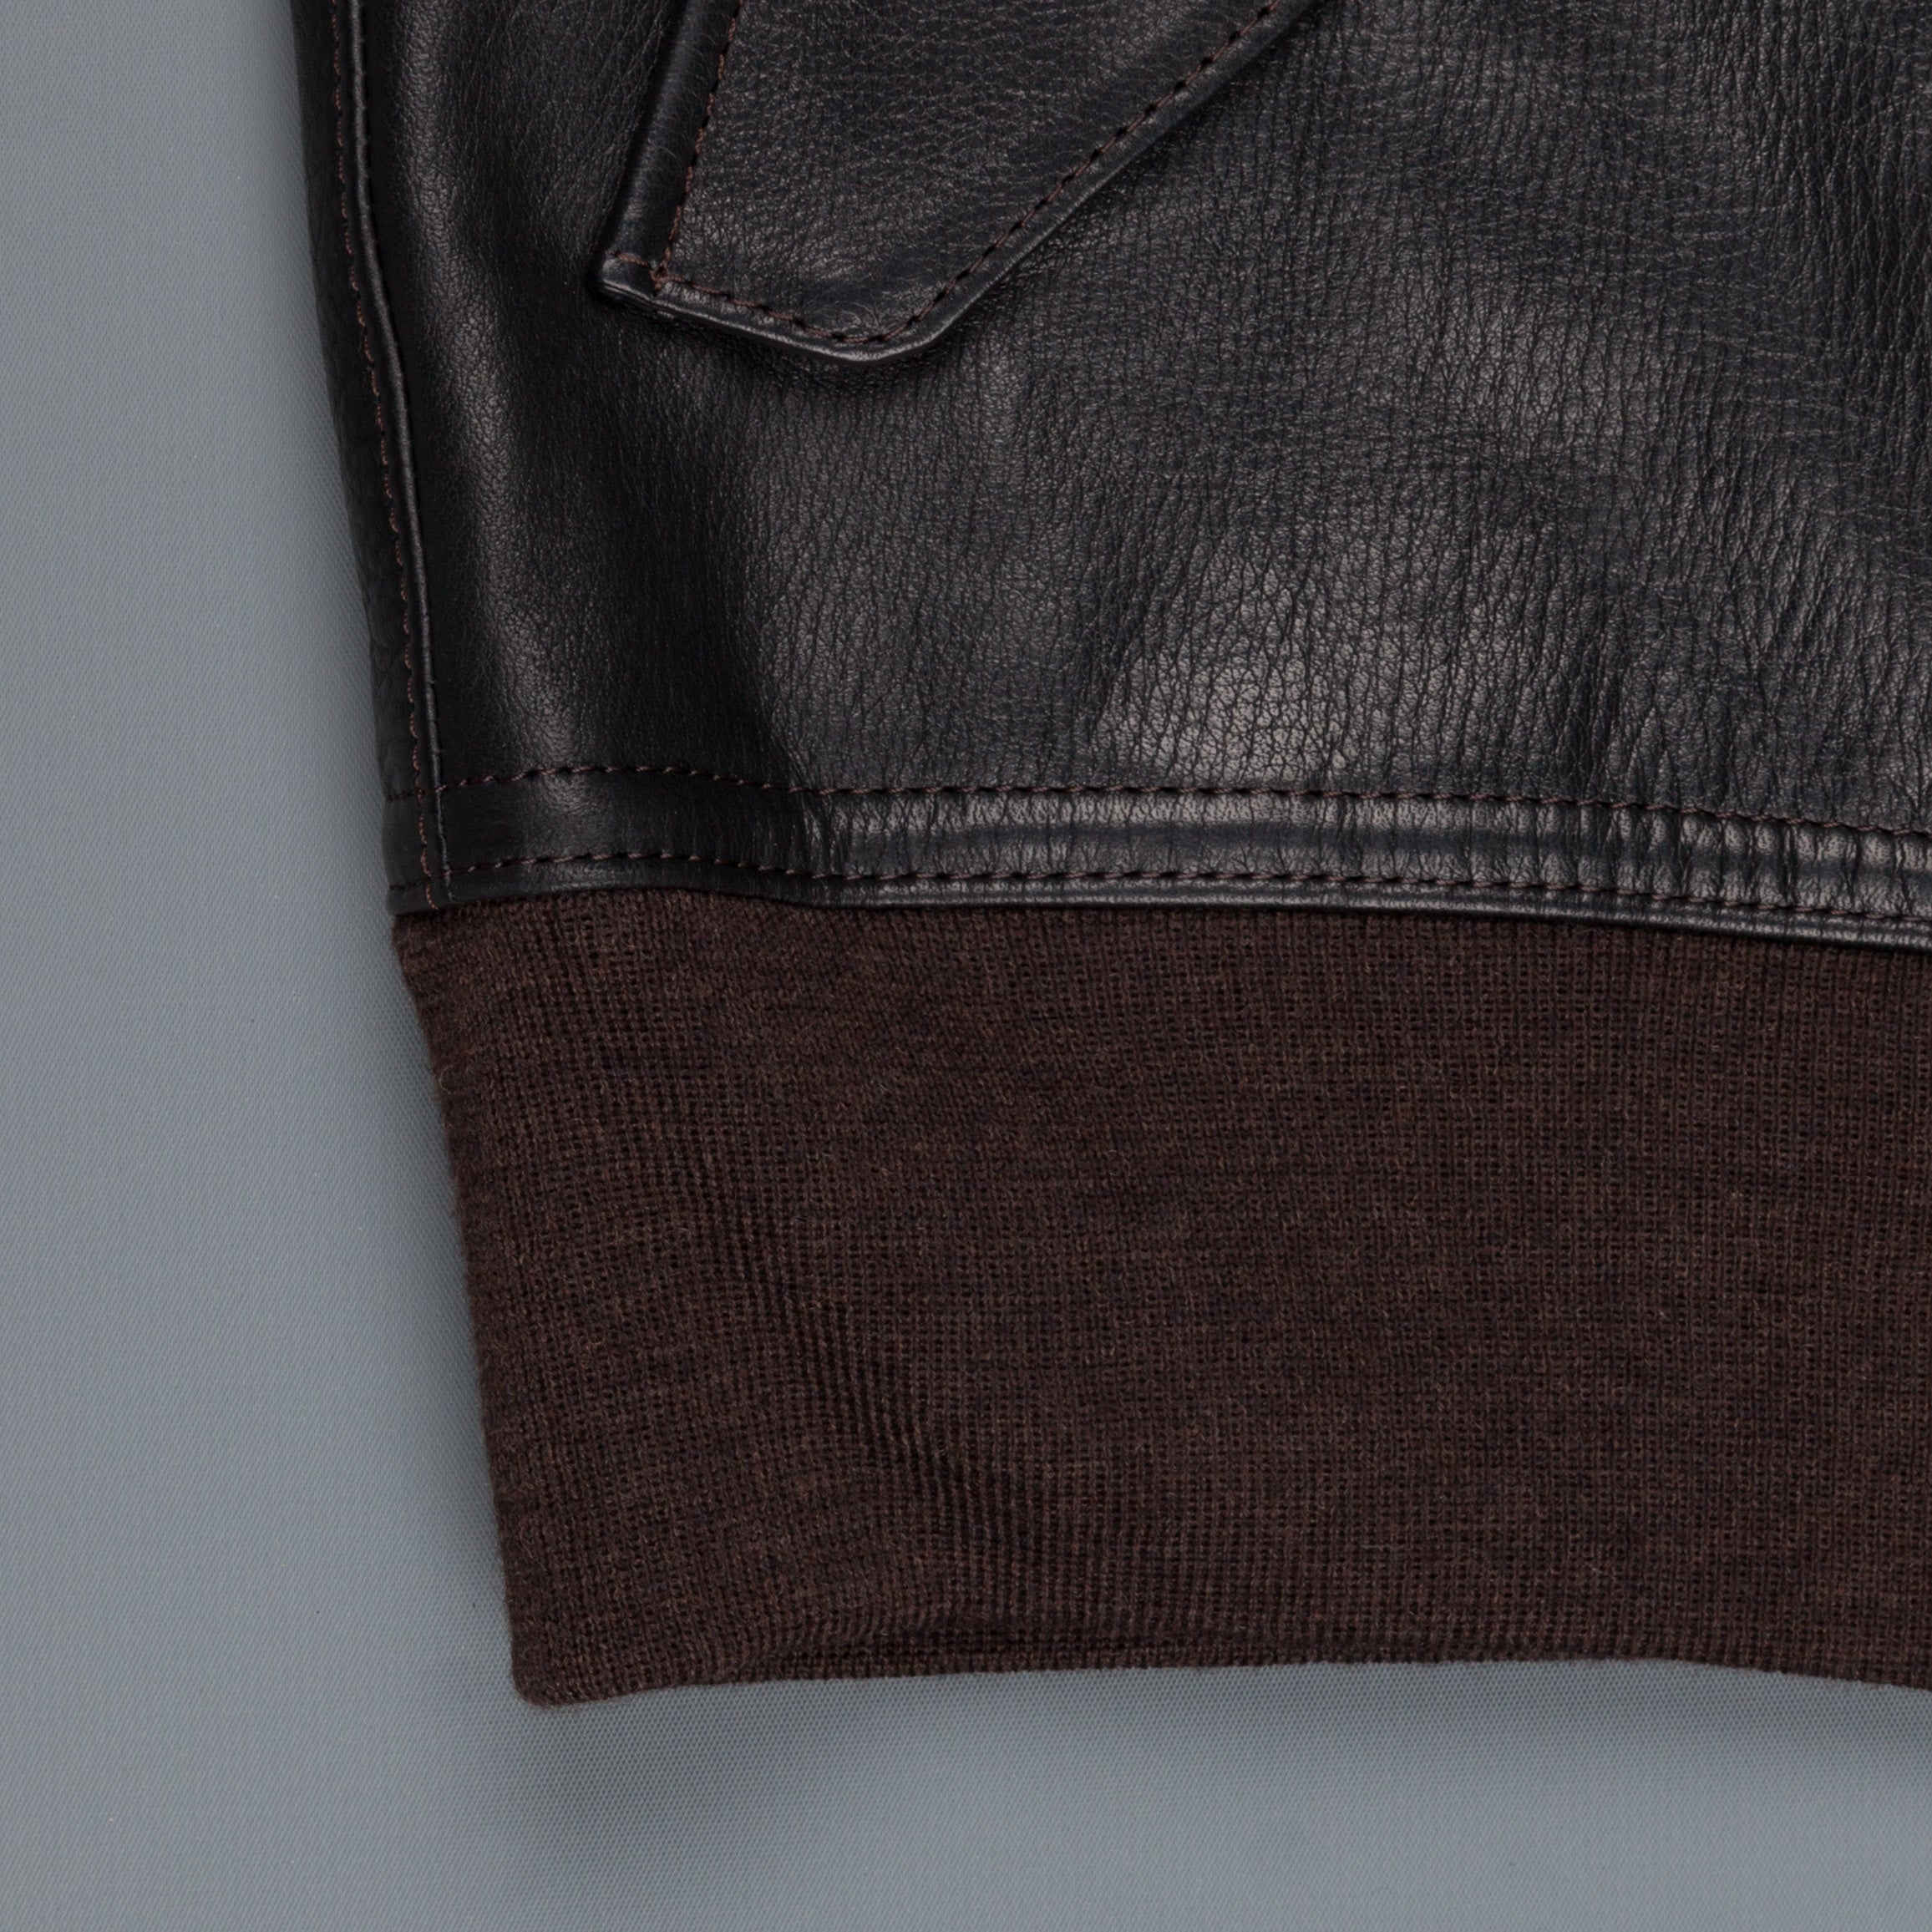 Orgueil Sport jacket Black Or-4067 – Frans Boone Store